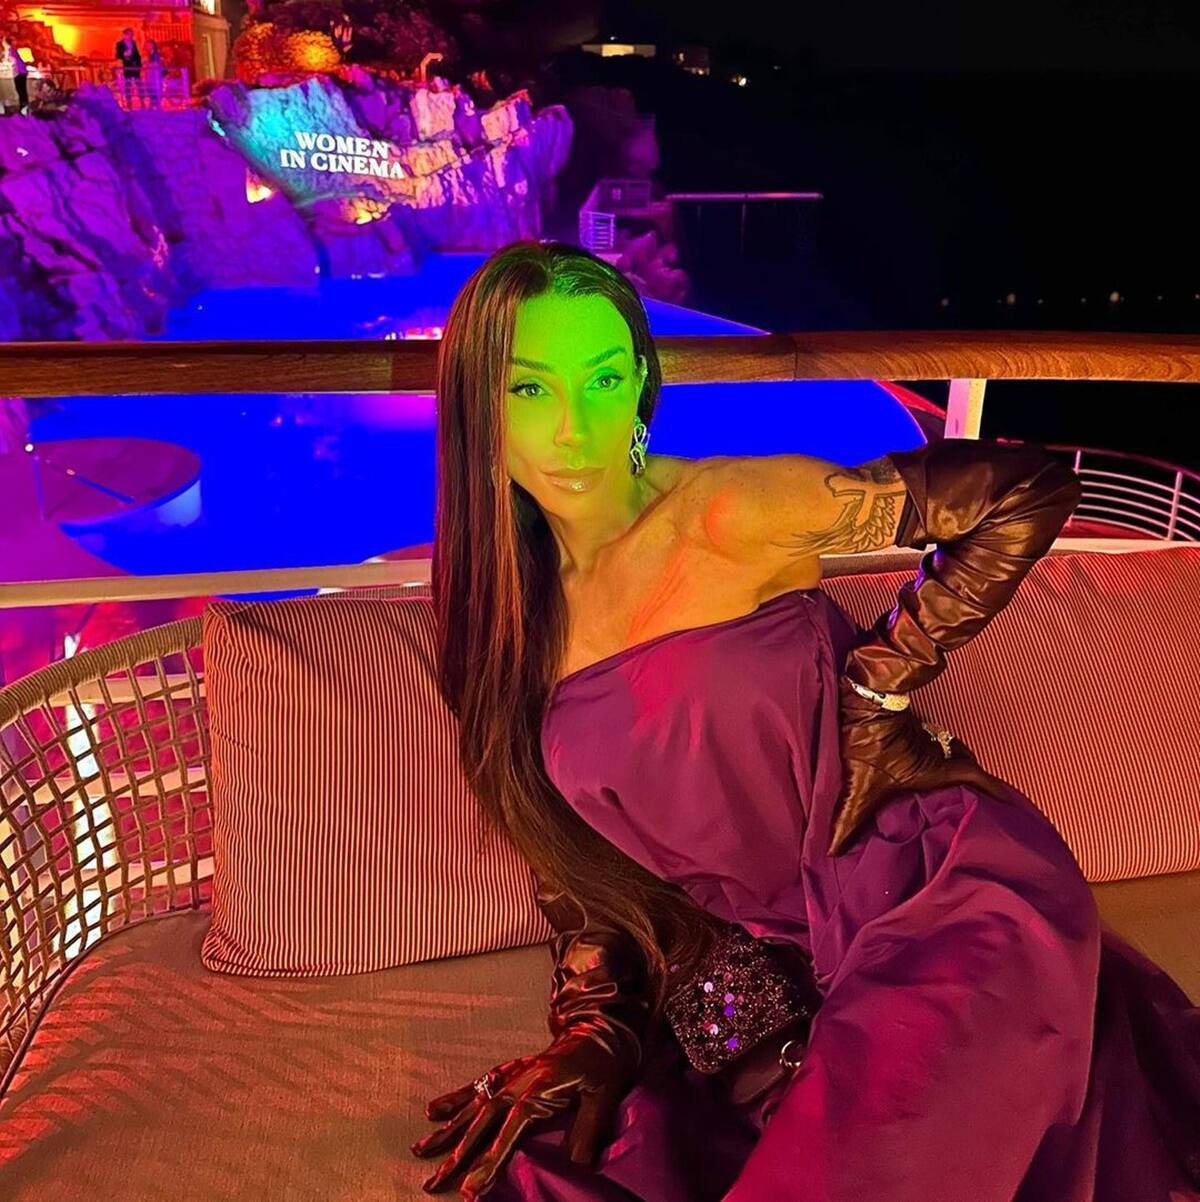 Maya Massafera posa, de vestido roxo e luva preta, no hotel onde em Cannes - Metrópoles